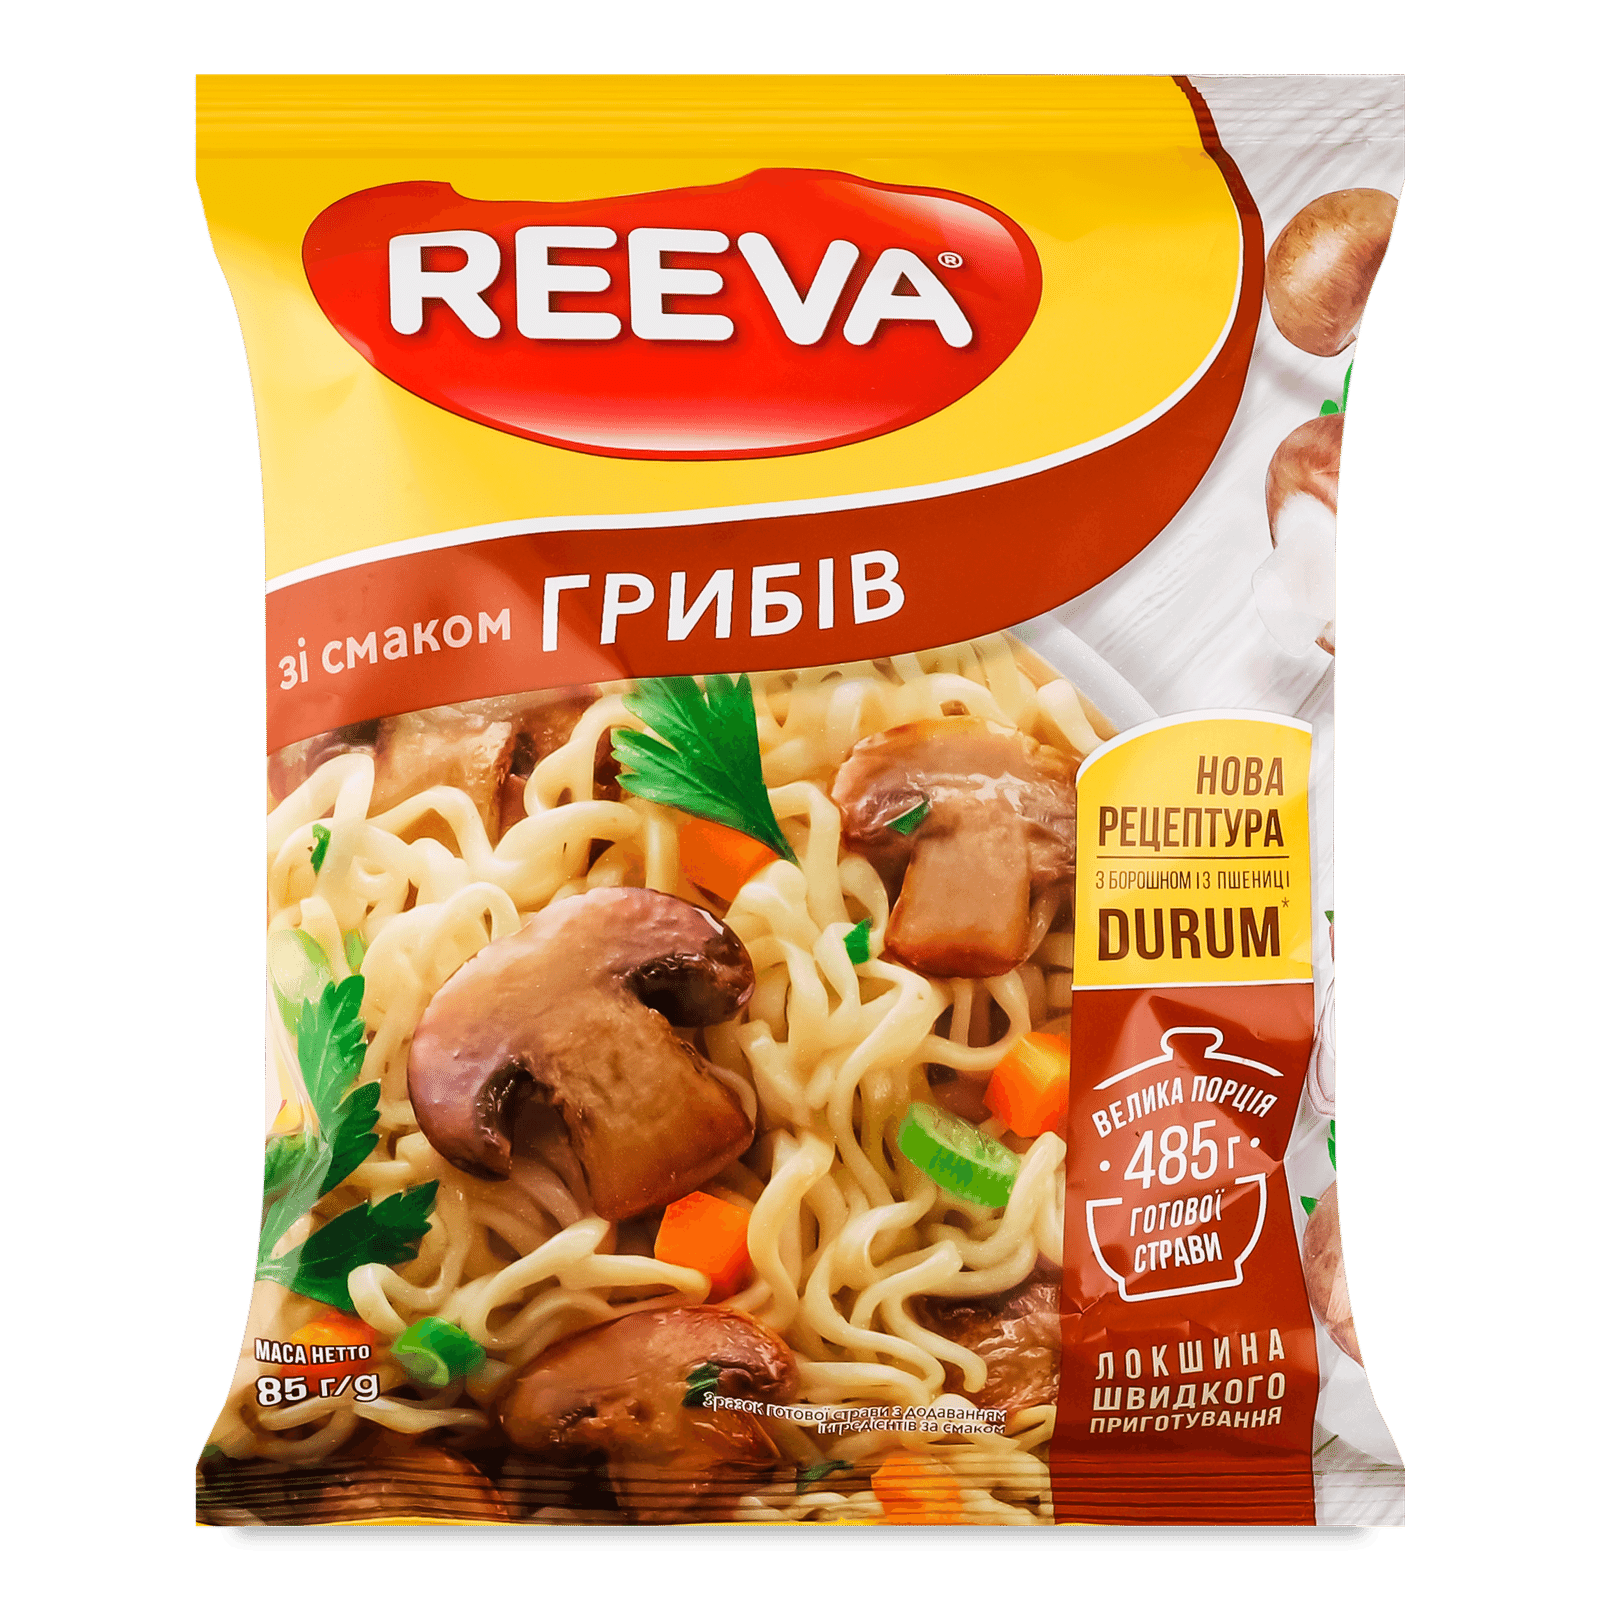 Локшина швидкого приготування Reeva зі смаком грибів - 1